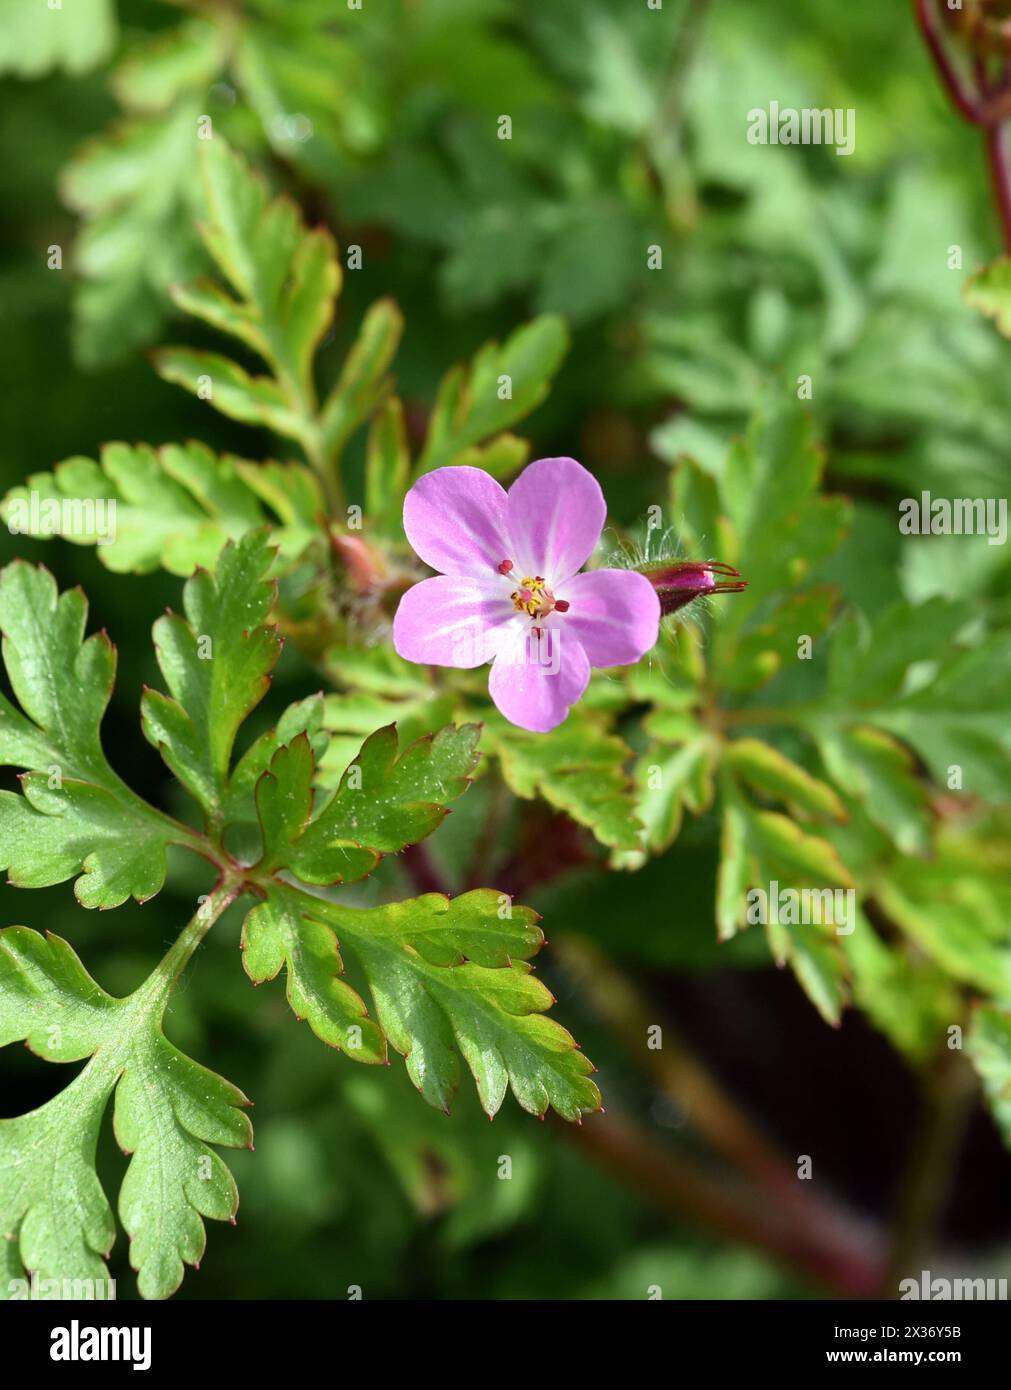 Ruprechtskraut, Geranium robertianum, ist eine wichtige Heilpflanze mit lila Blueten. Ruprechtskraut, Geranium robertianum, is an important medicinal Stock Photo